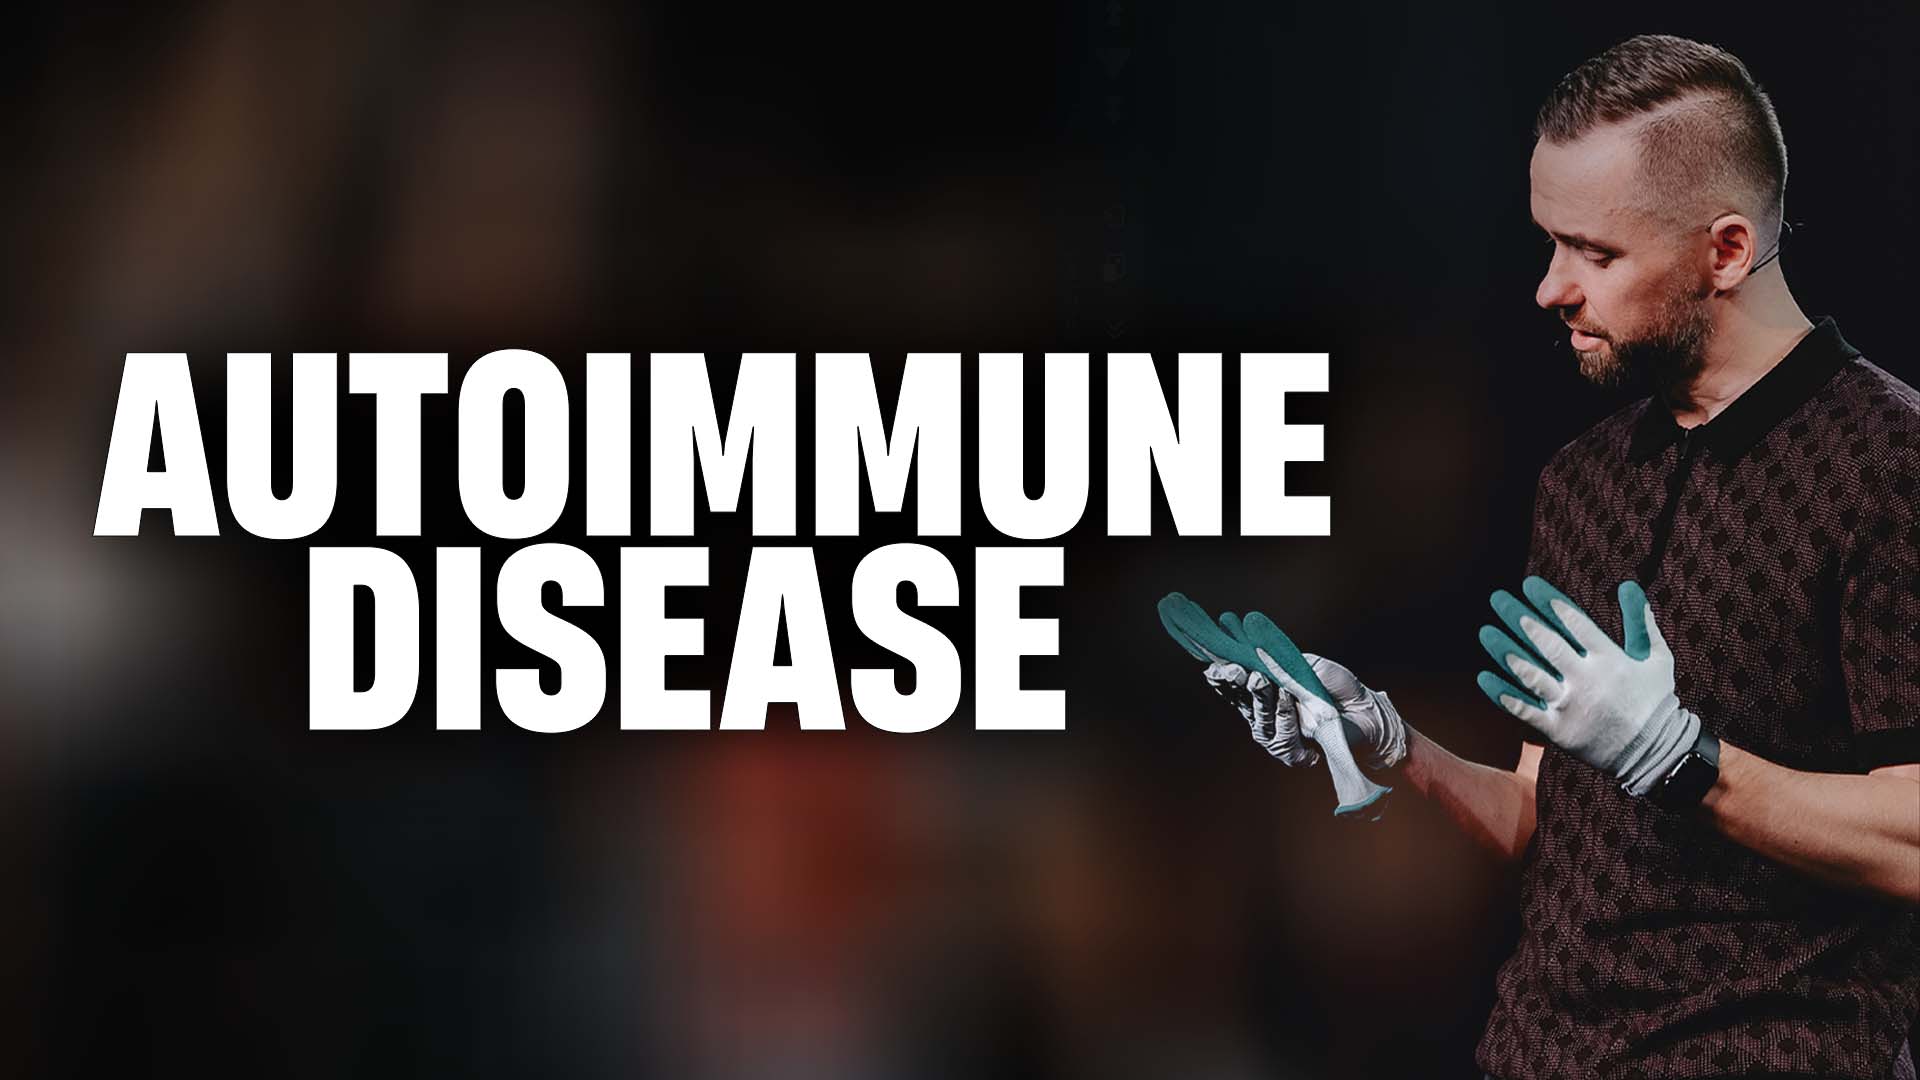 Featured Image for “Autoimmune Disease”